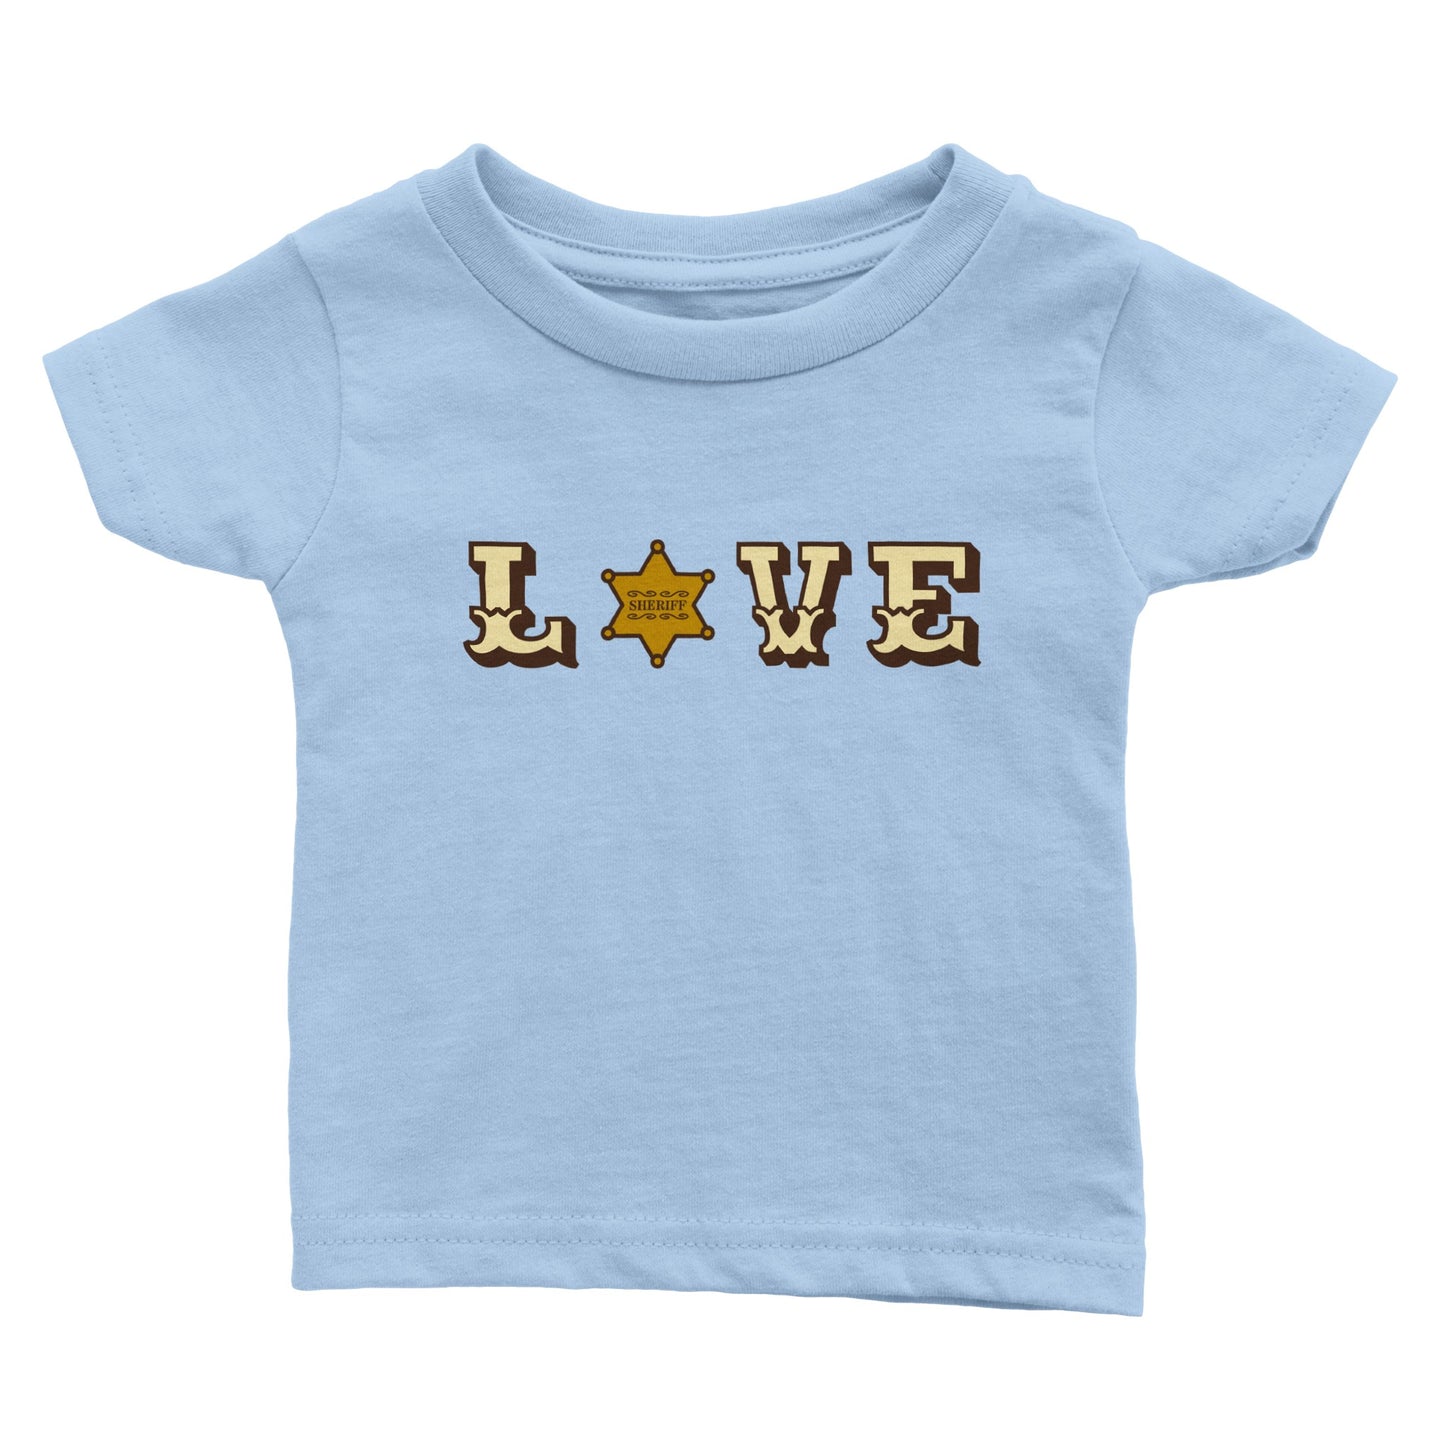 Sheriff Love T-shirt Baby